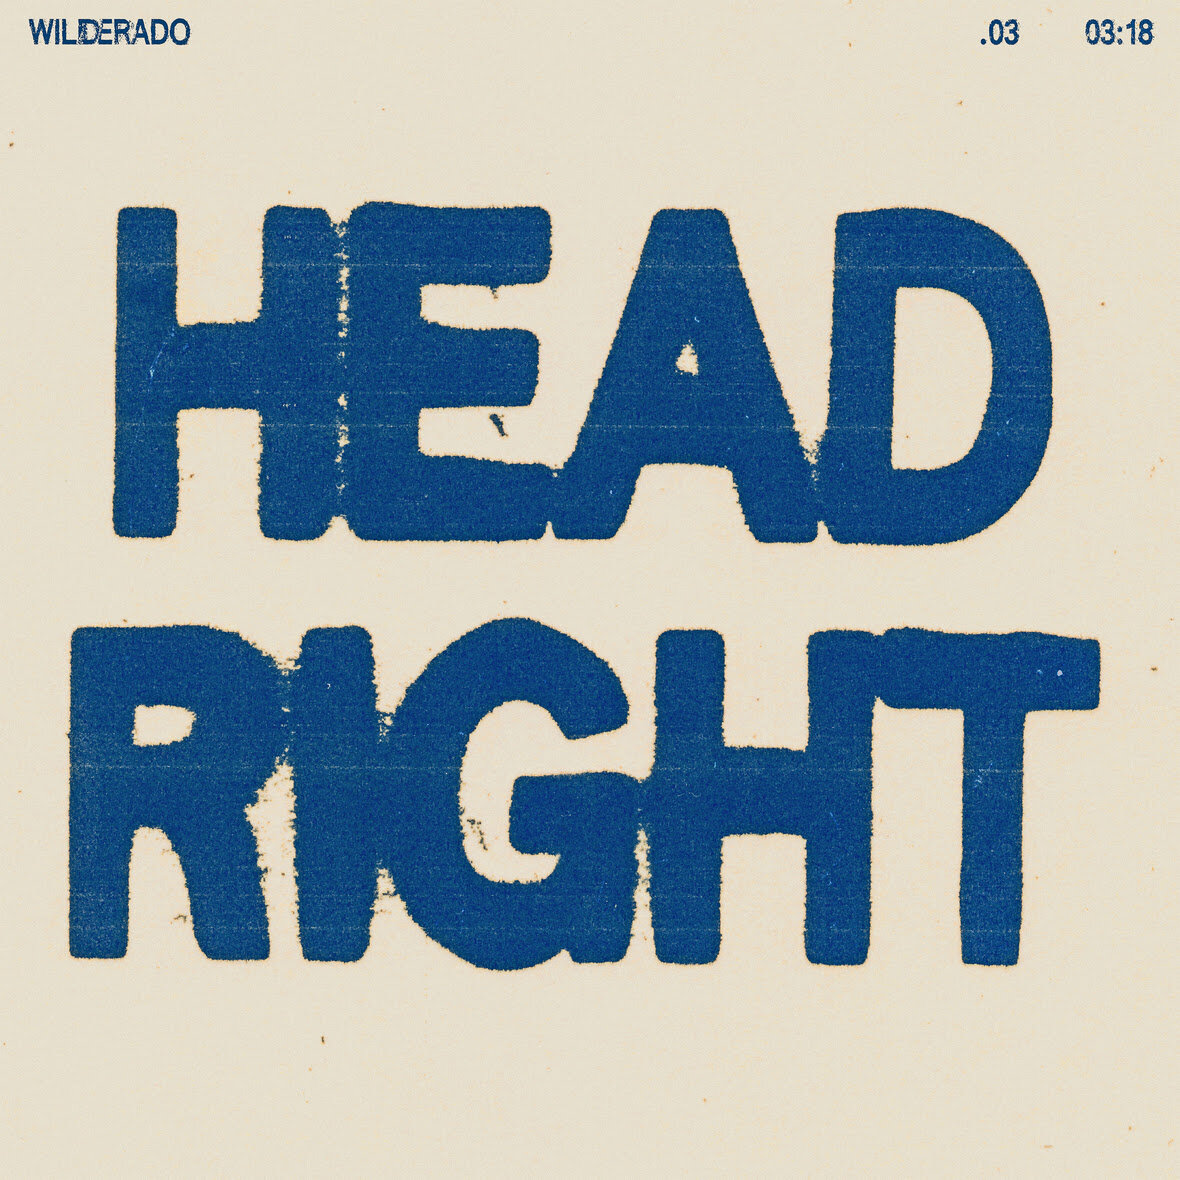 Wilderado - "Head Right" - Single